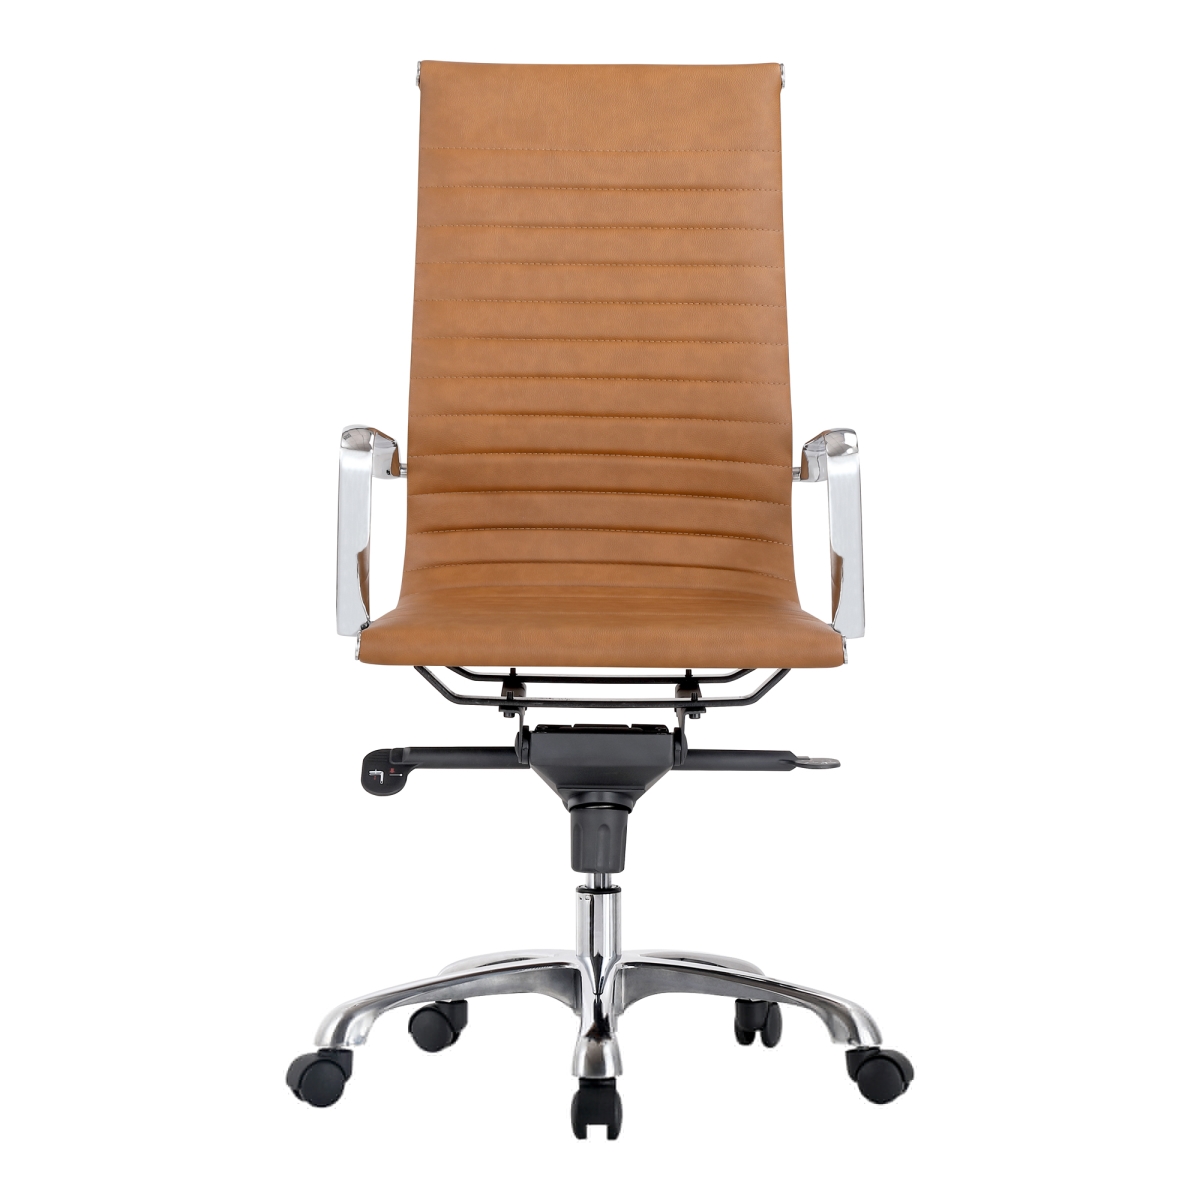 Zm-1001-40 Omega High Back Swivel Office Chair, Tan